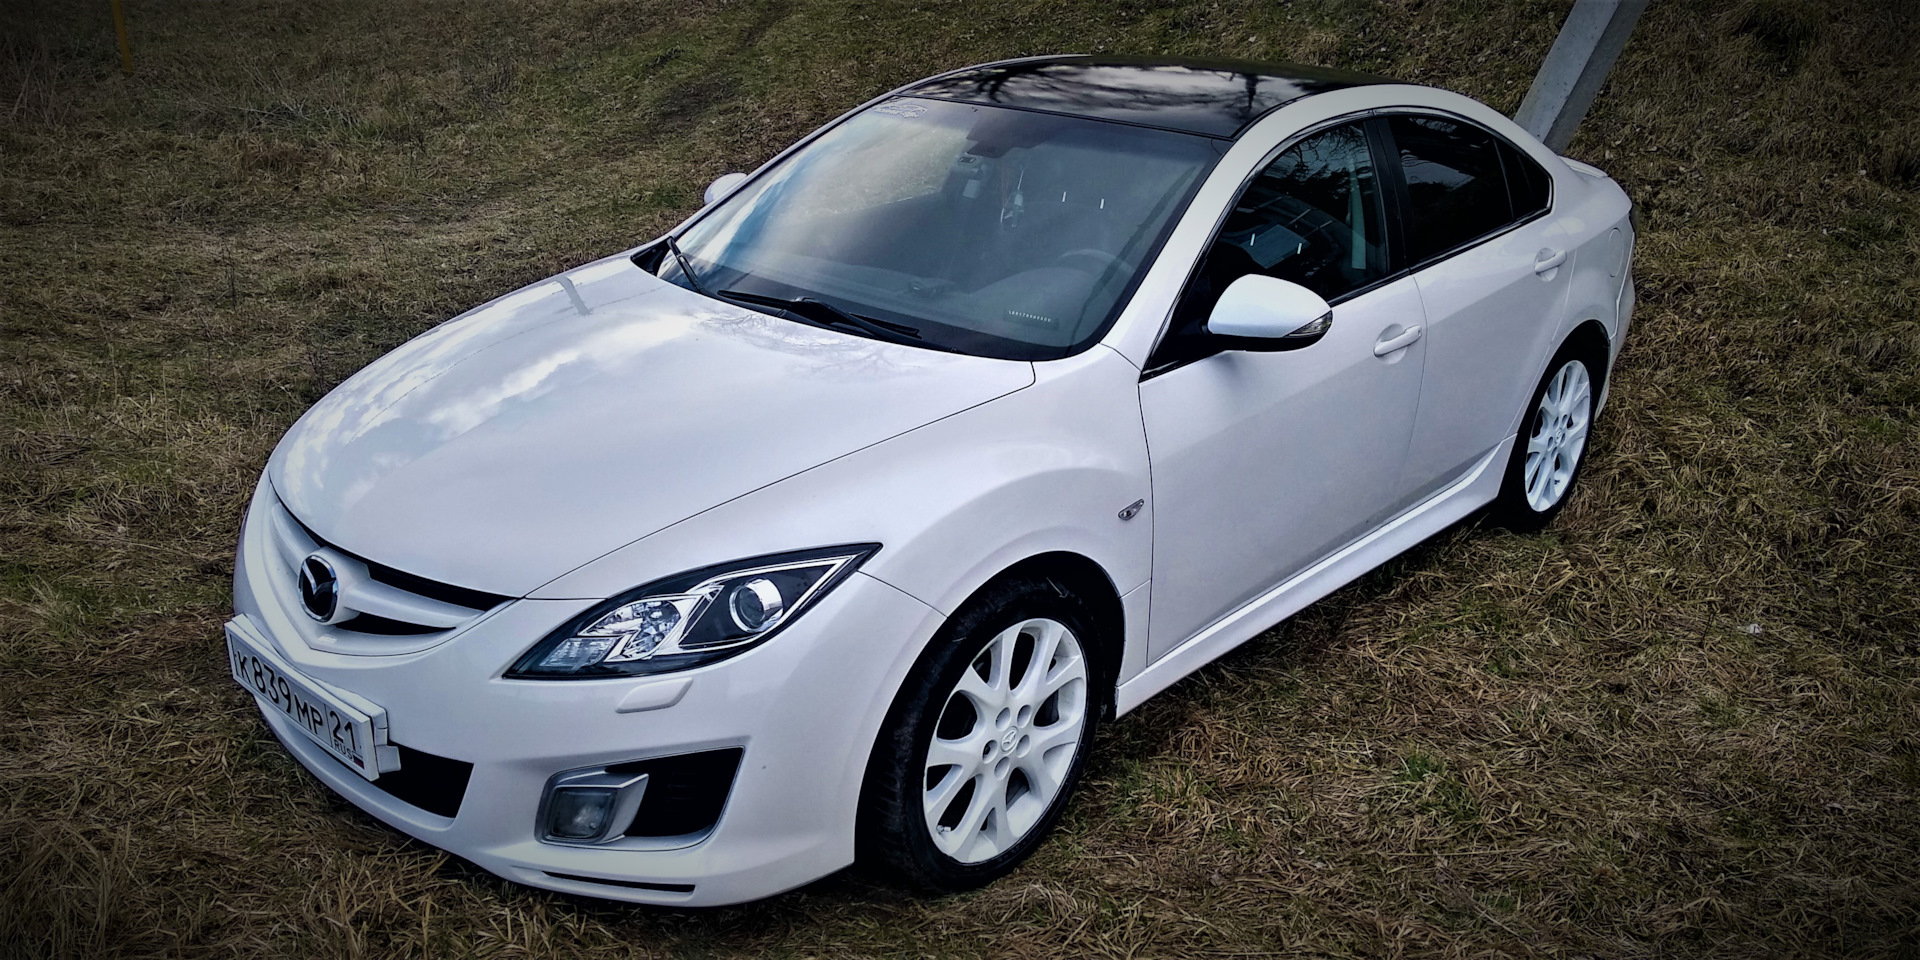 Mazda gh 2.5. Мазда 6 GH 2008 белая. Мазда 6 GH белая. Mazda6 GH 2010 2.5. Мазда 6 GH 2010 белая.